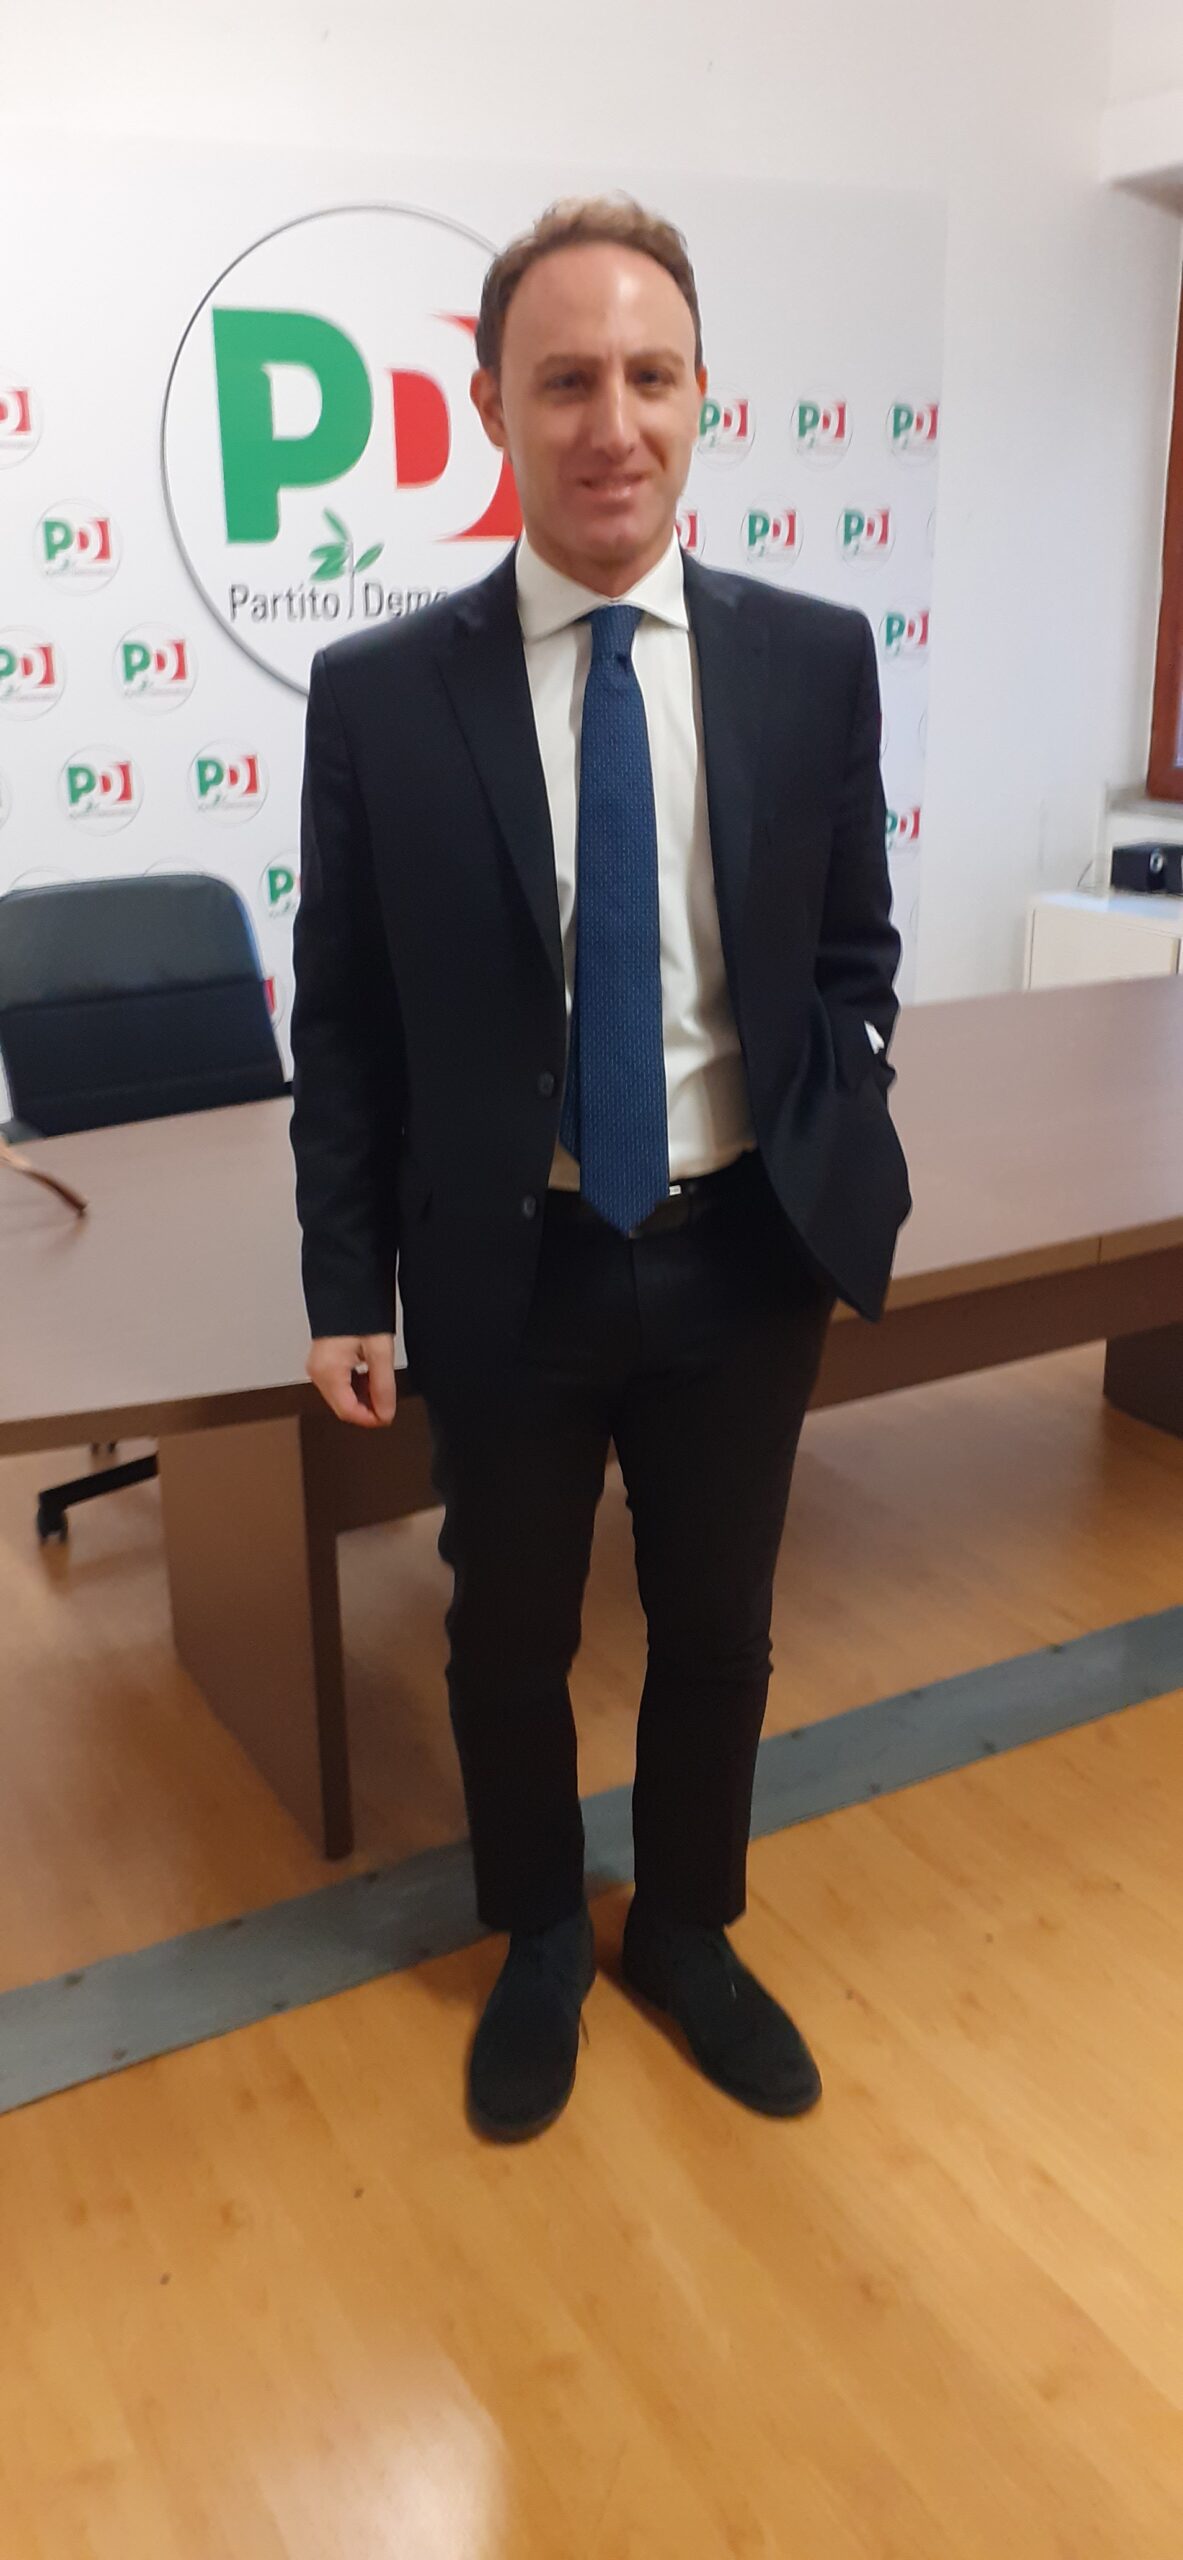 Salerno: on. Piero De Luca “Proposte del Governo contro Sud, ci batteremo contro Italia a doppia velocità”